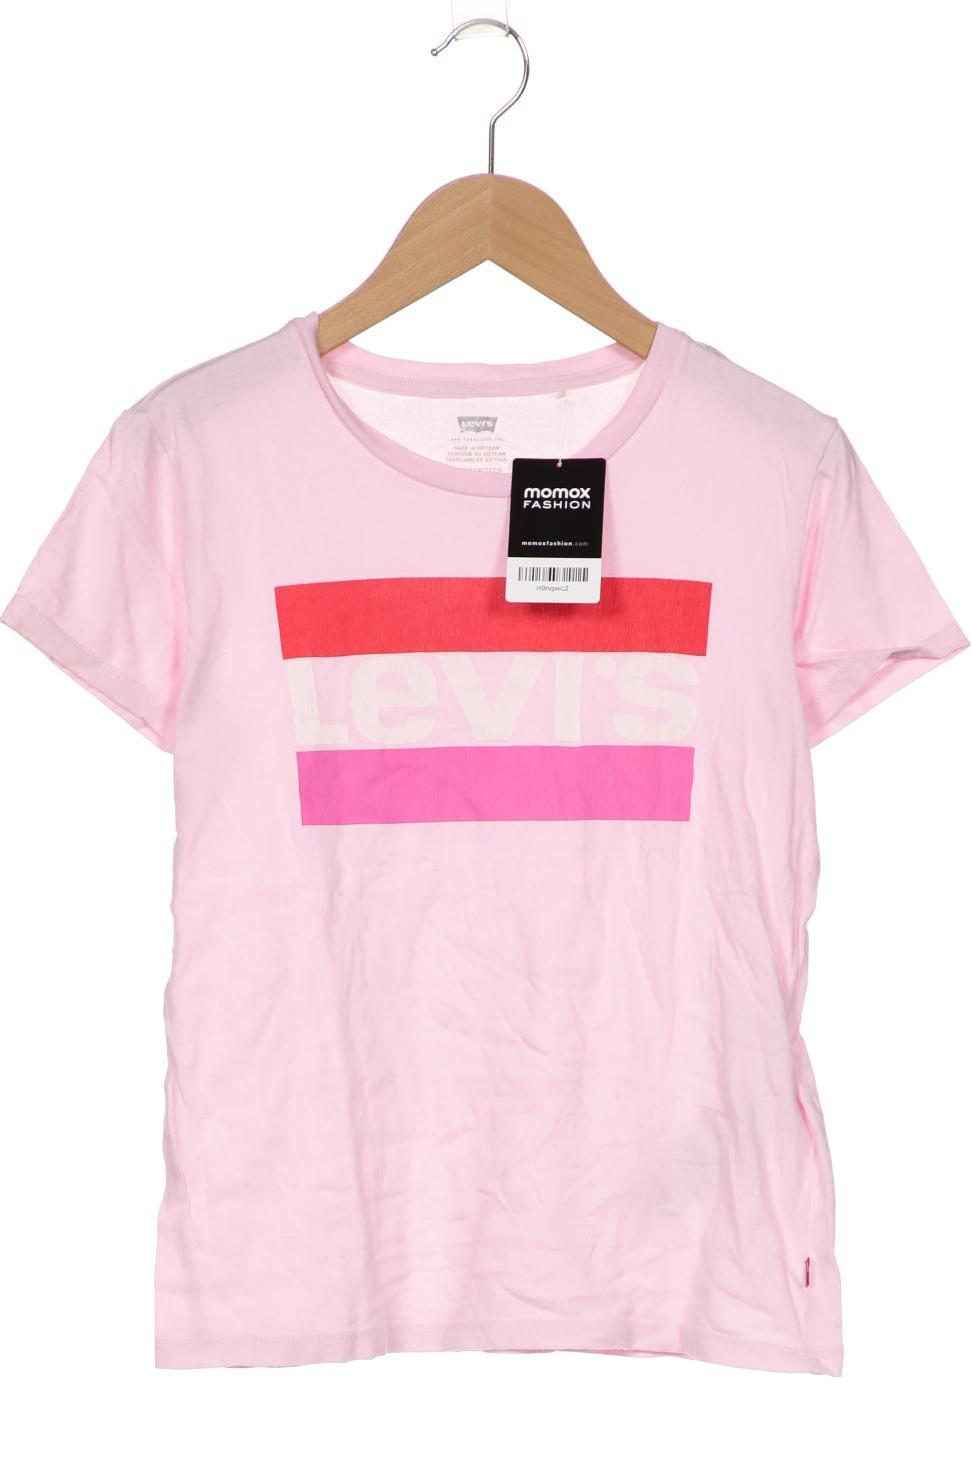 Levis Damen T-Shirt, pink von Levis